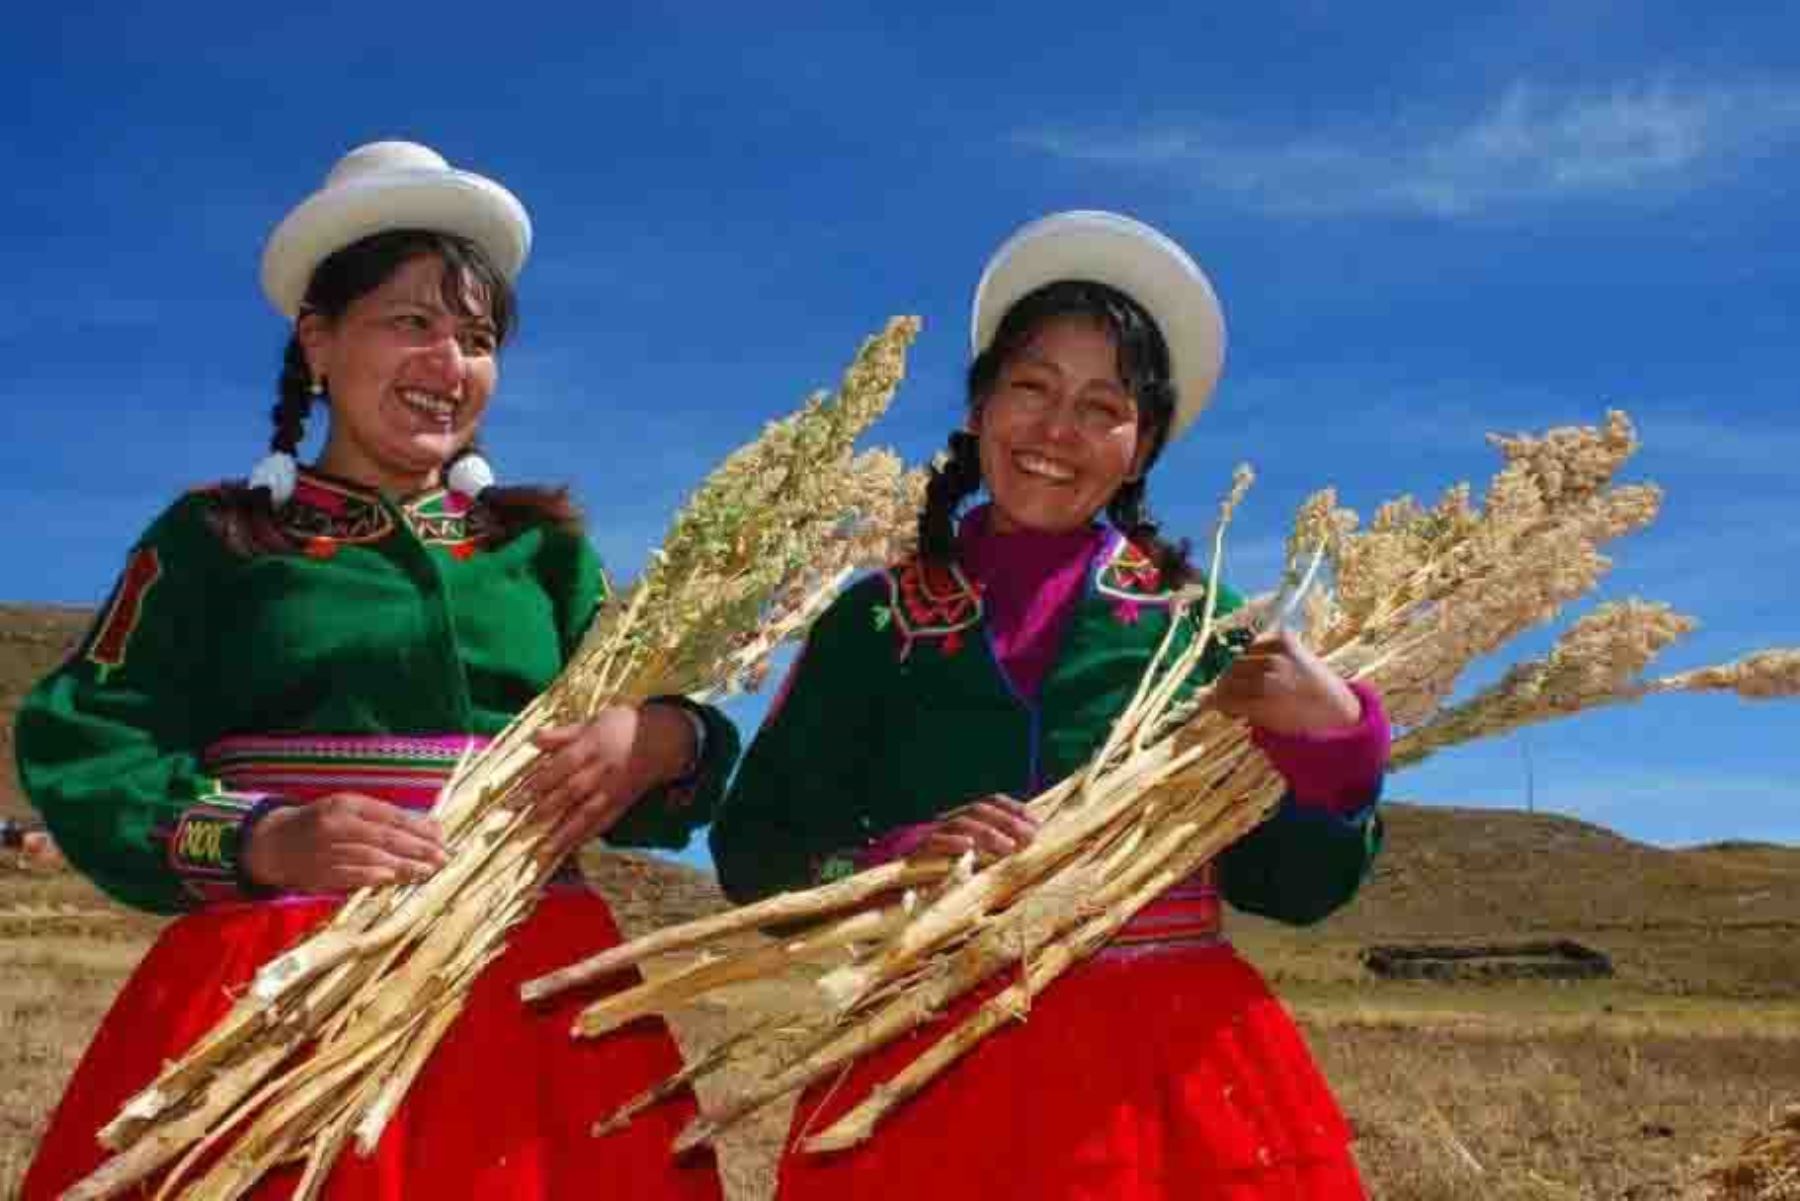 Entre febrero de 2018 y marzo de 2020, el Ministerio de Agricultura y Riego (Minagri) proyecta titular de forma gratuita a más de 100,000 predios pertenecientes a comunidades campesinas e indígenas de las regiones de Apurímac, Cusco y Puno.